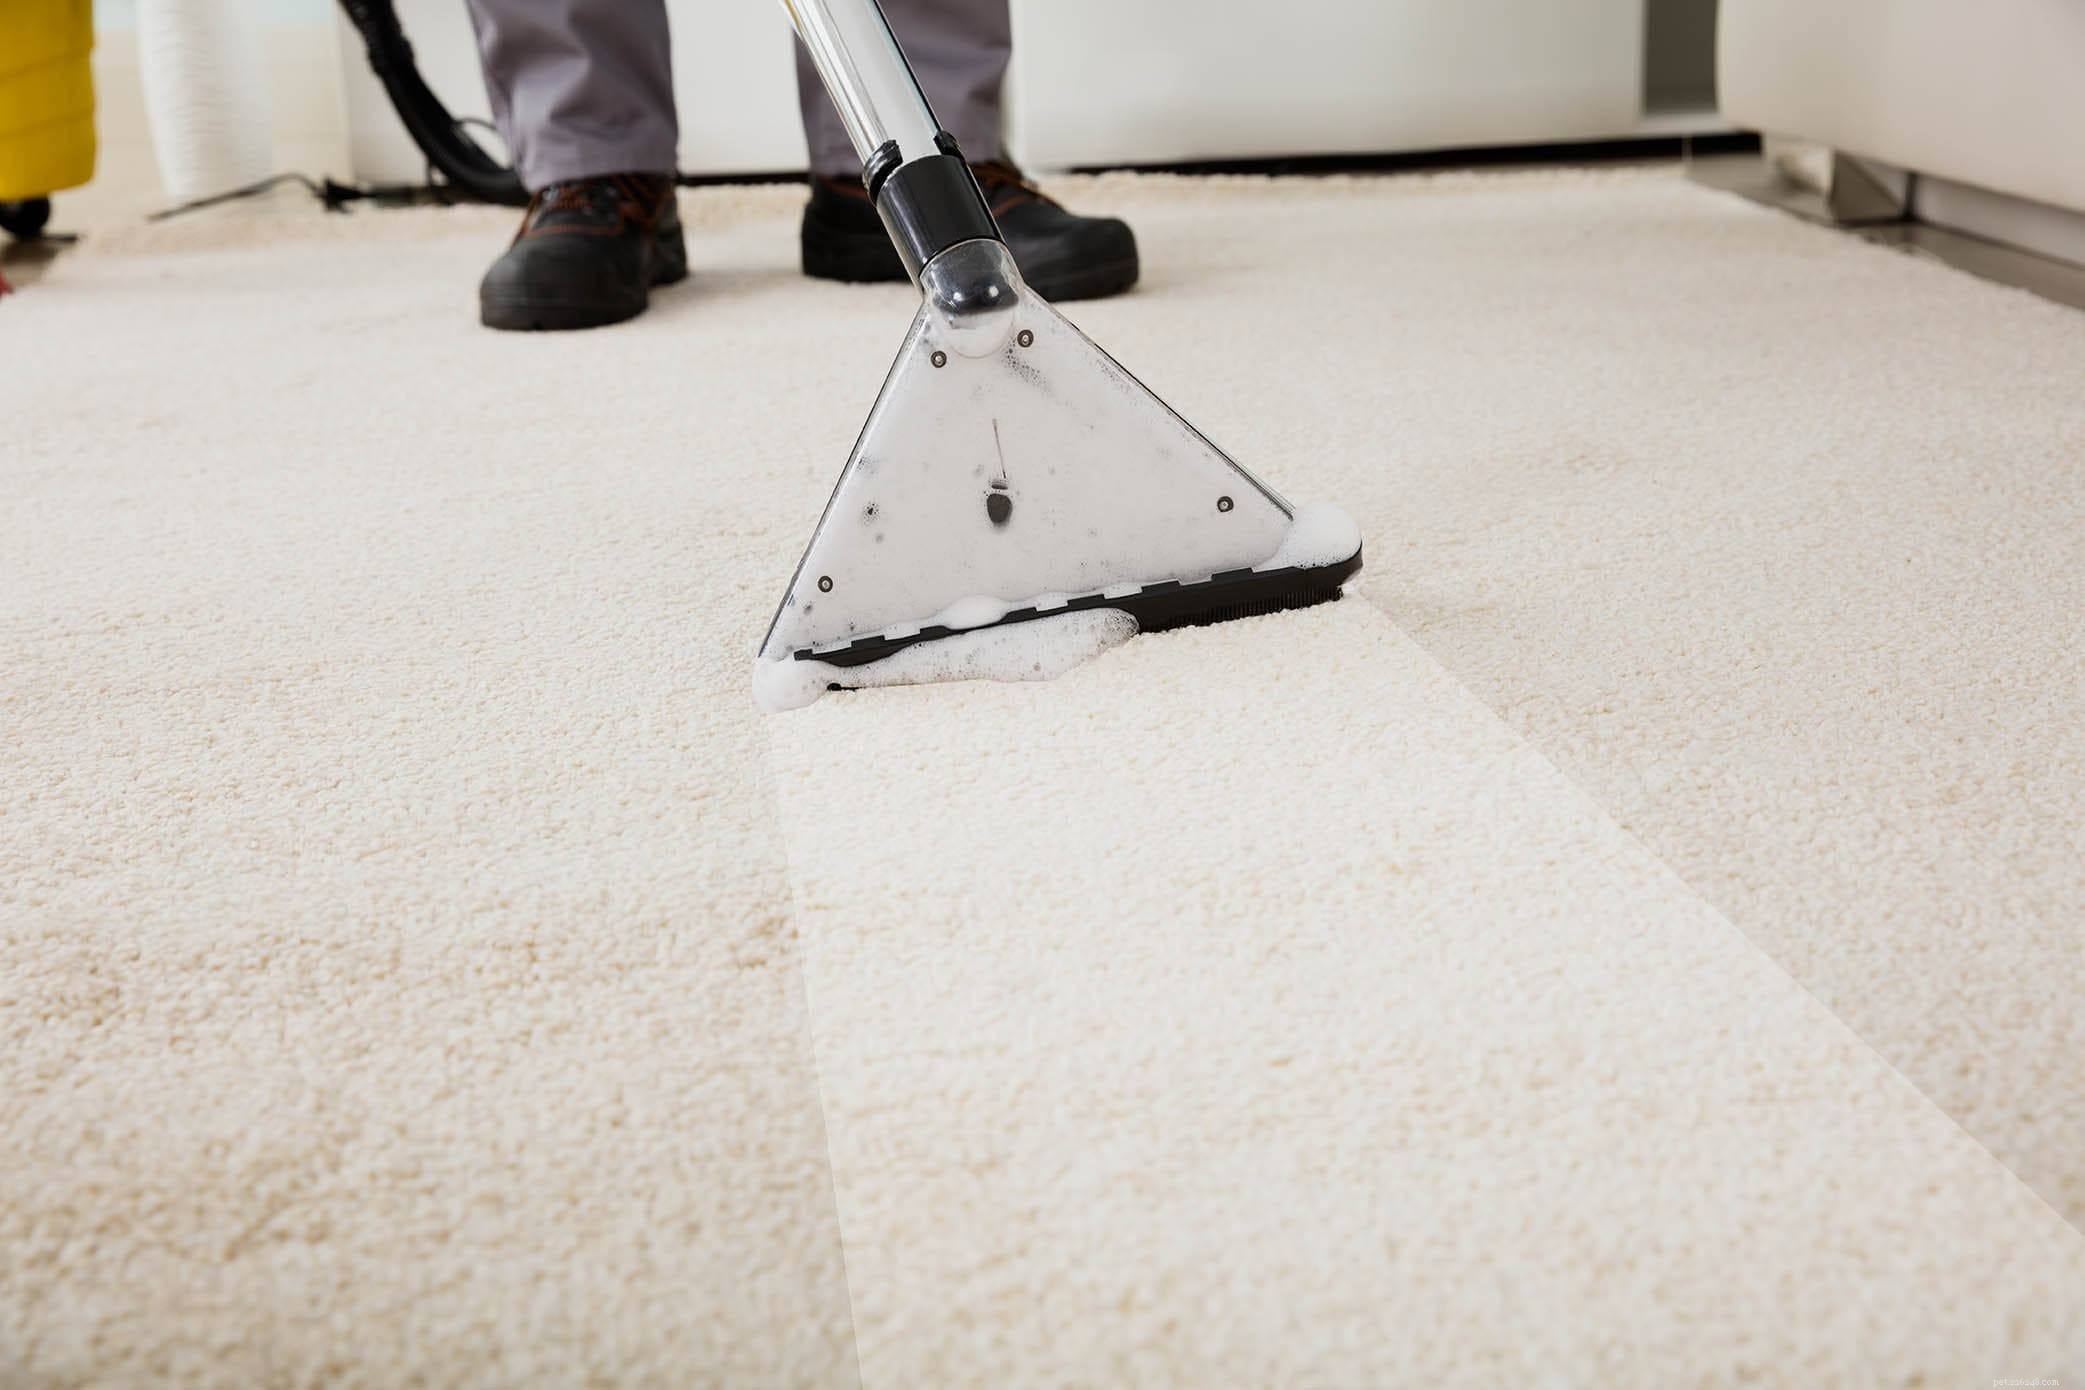 Verwijdert professionele tapijtreiniging de geur van huisdieren?